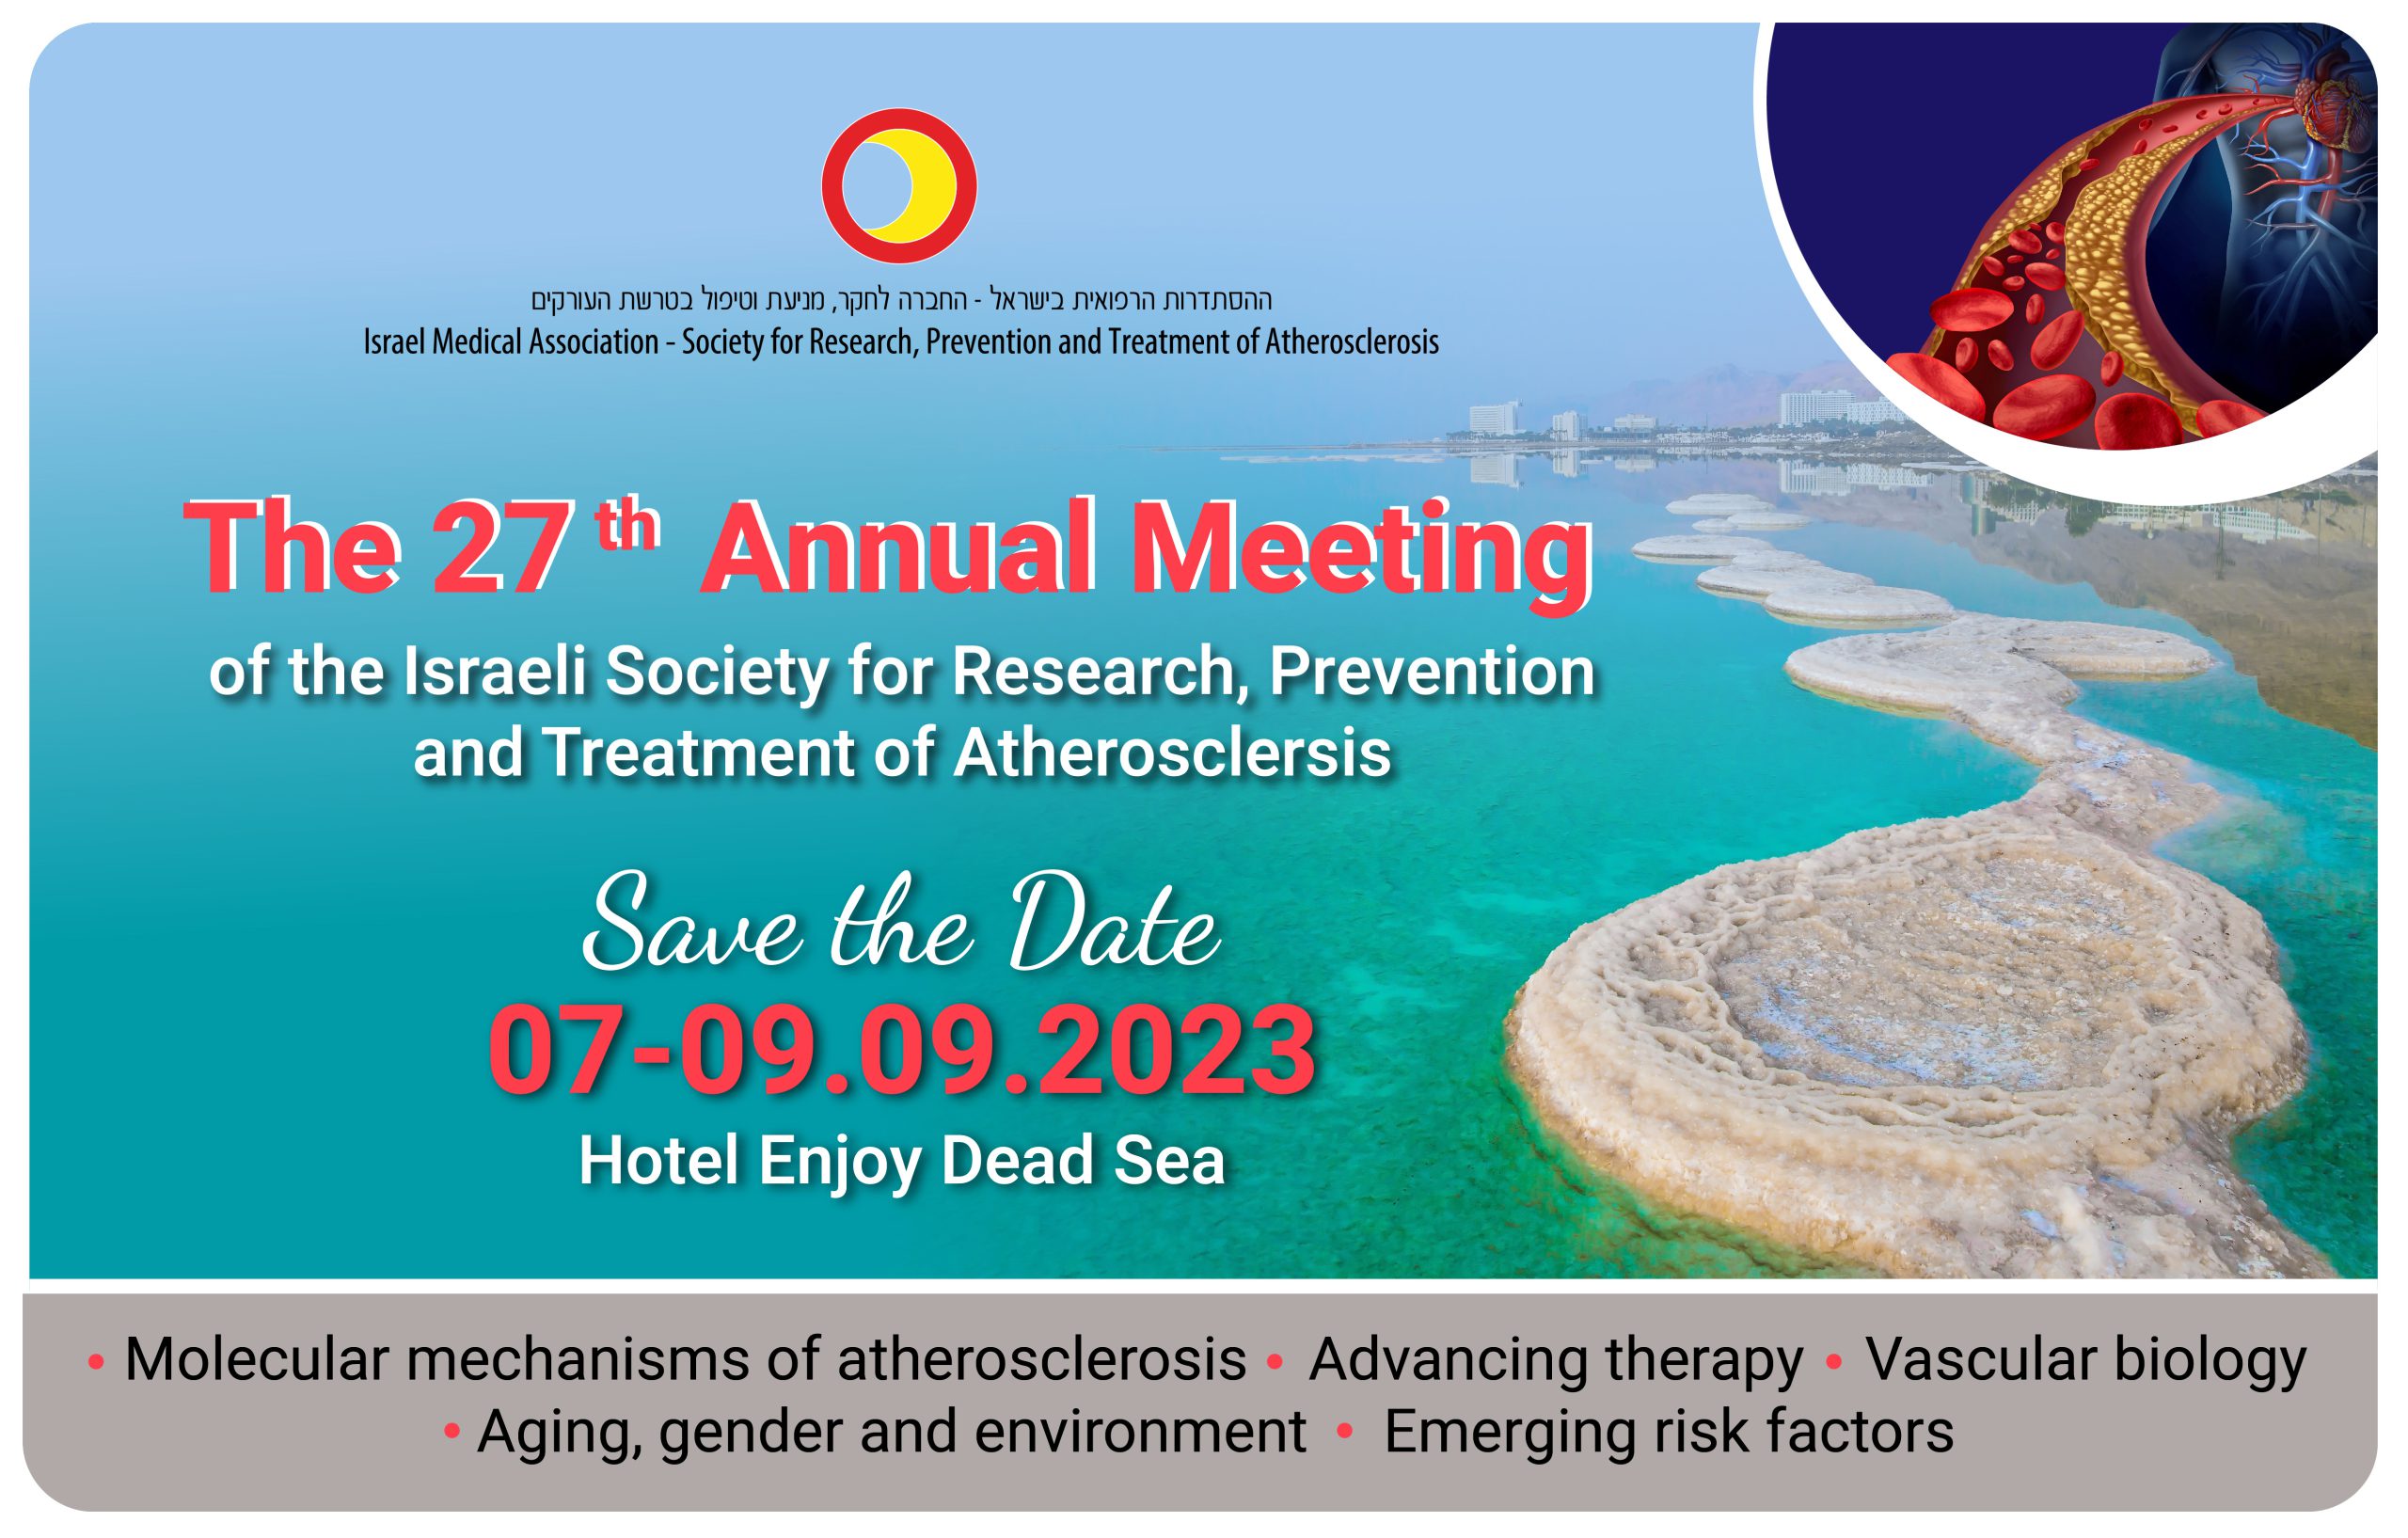 SAVE THE DATE: הכנס השנתי ה-27 של החברה לחקר, מניעה וטיפול בטרשת עורקים יתקיים ב-07-09/09/2023 בים המלח